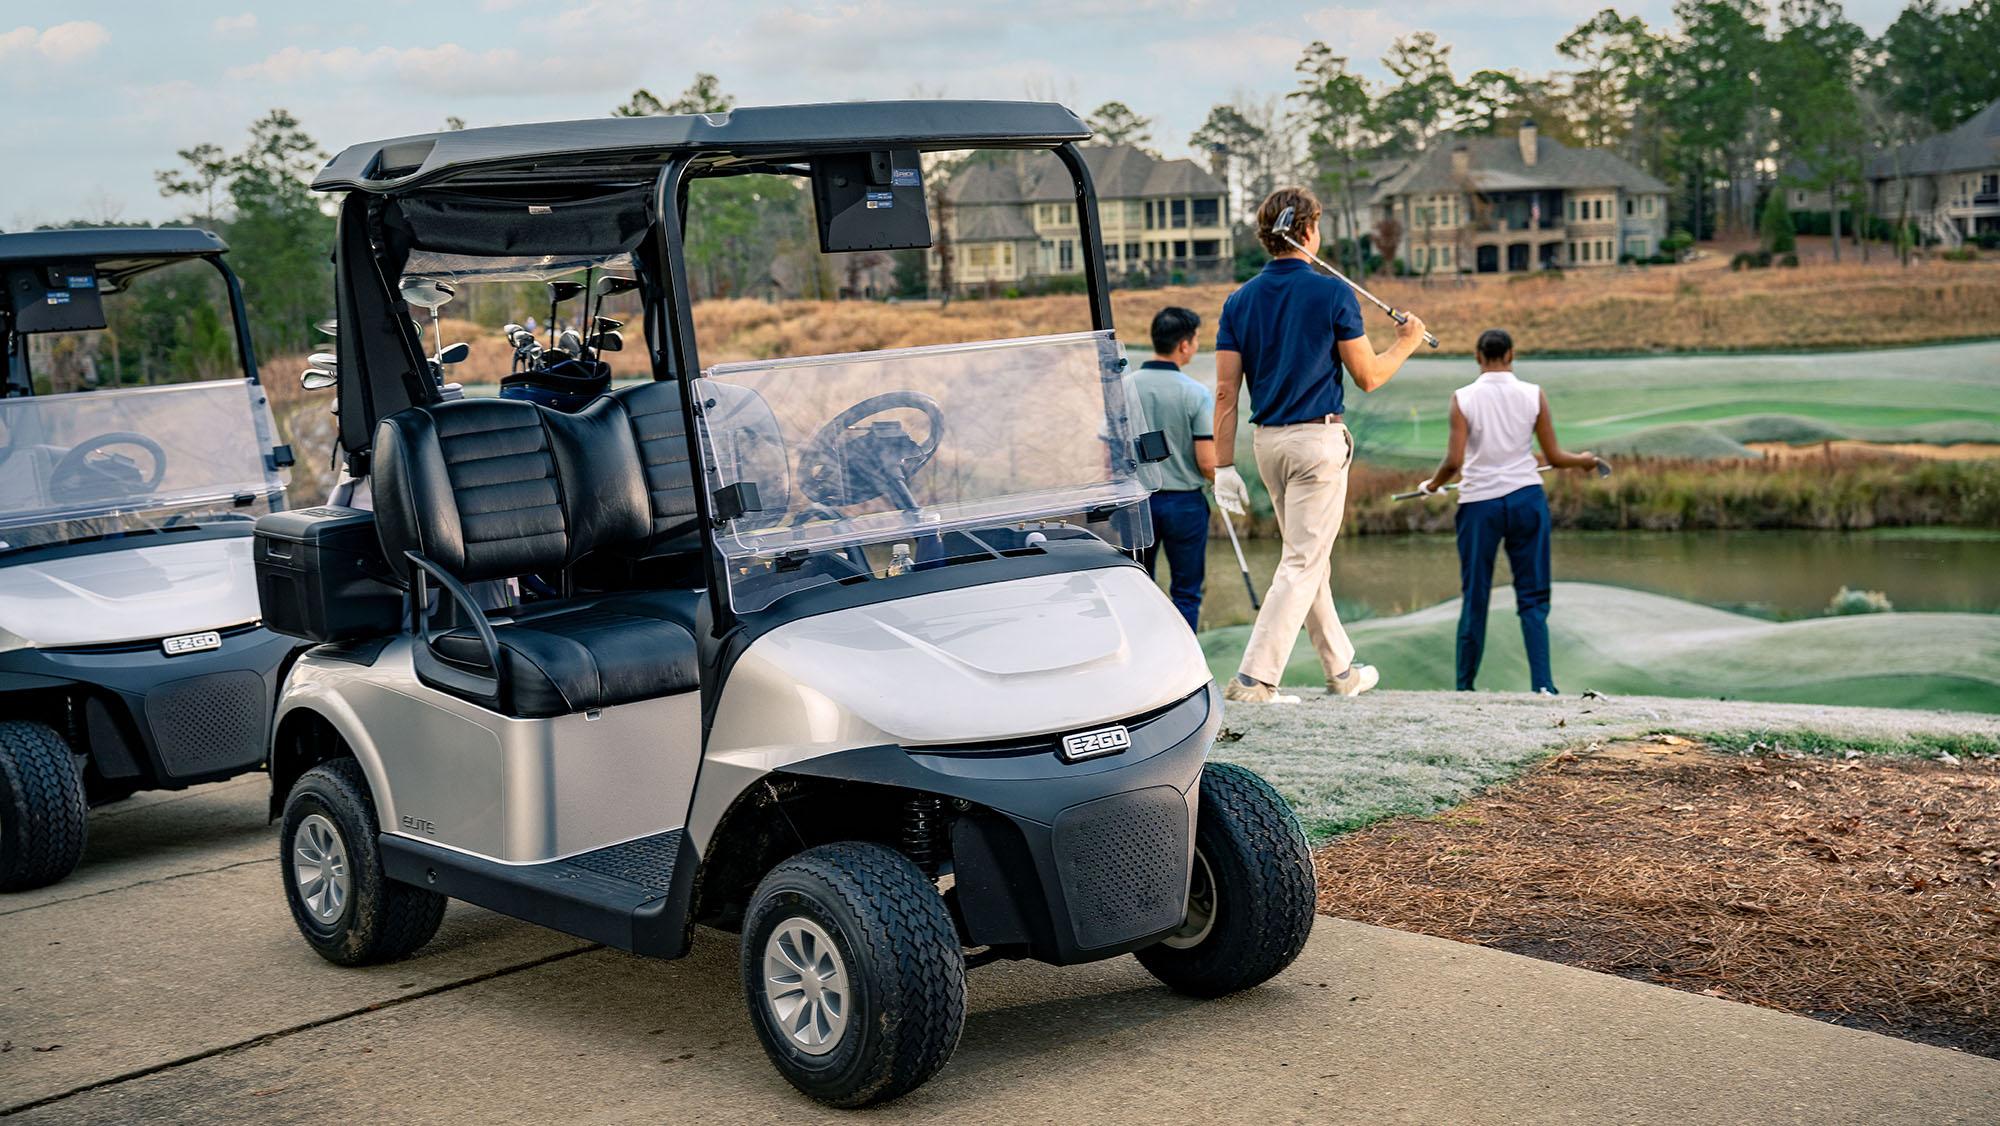 Gas golf cart / electric golf cart